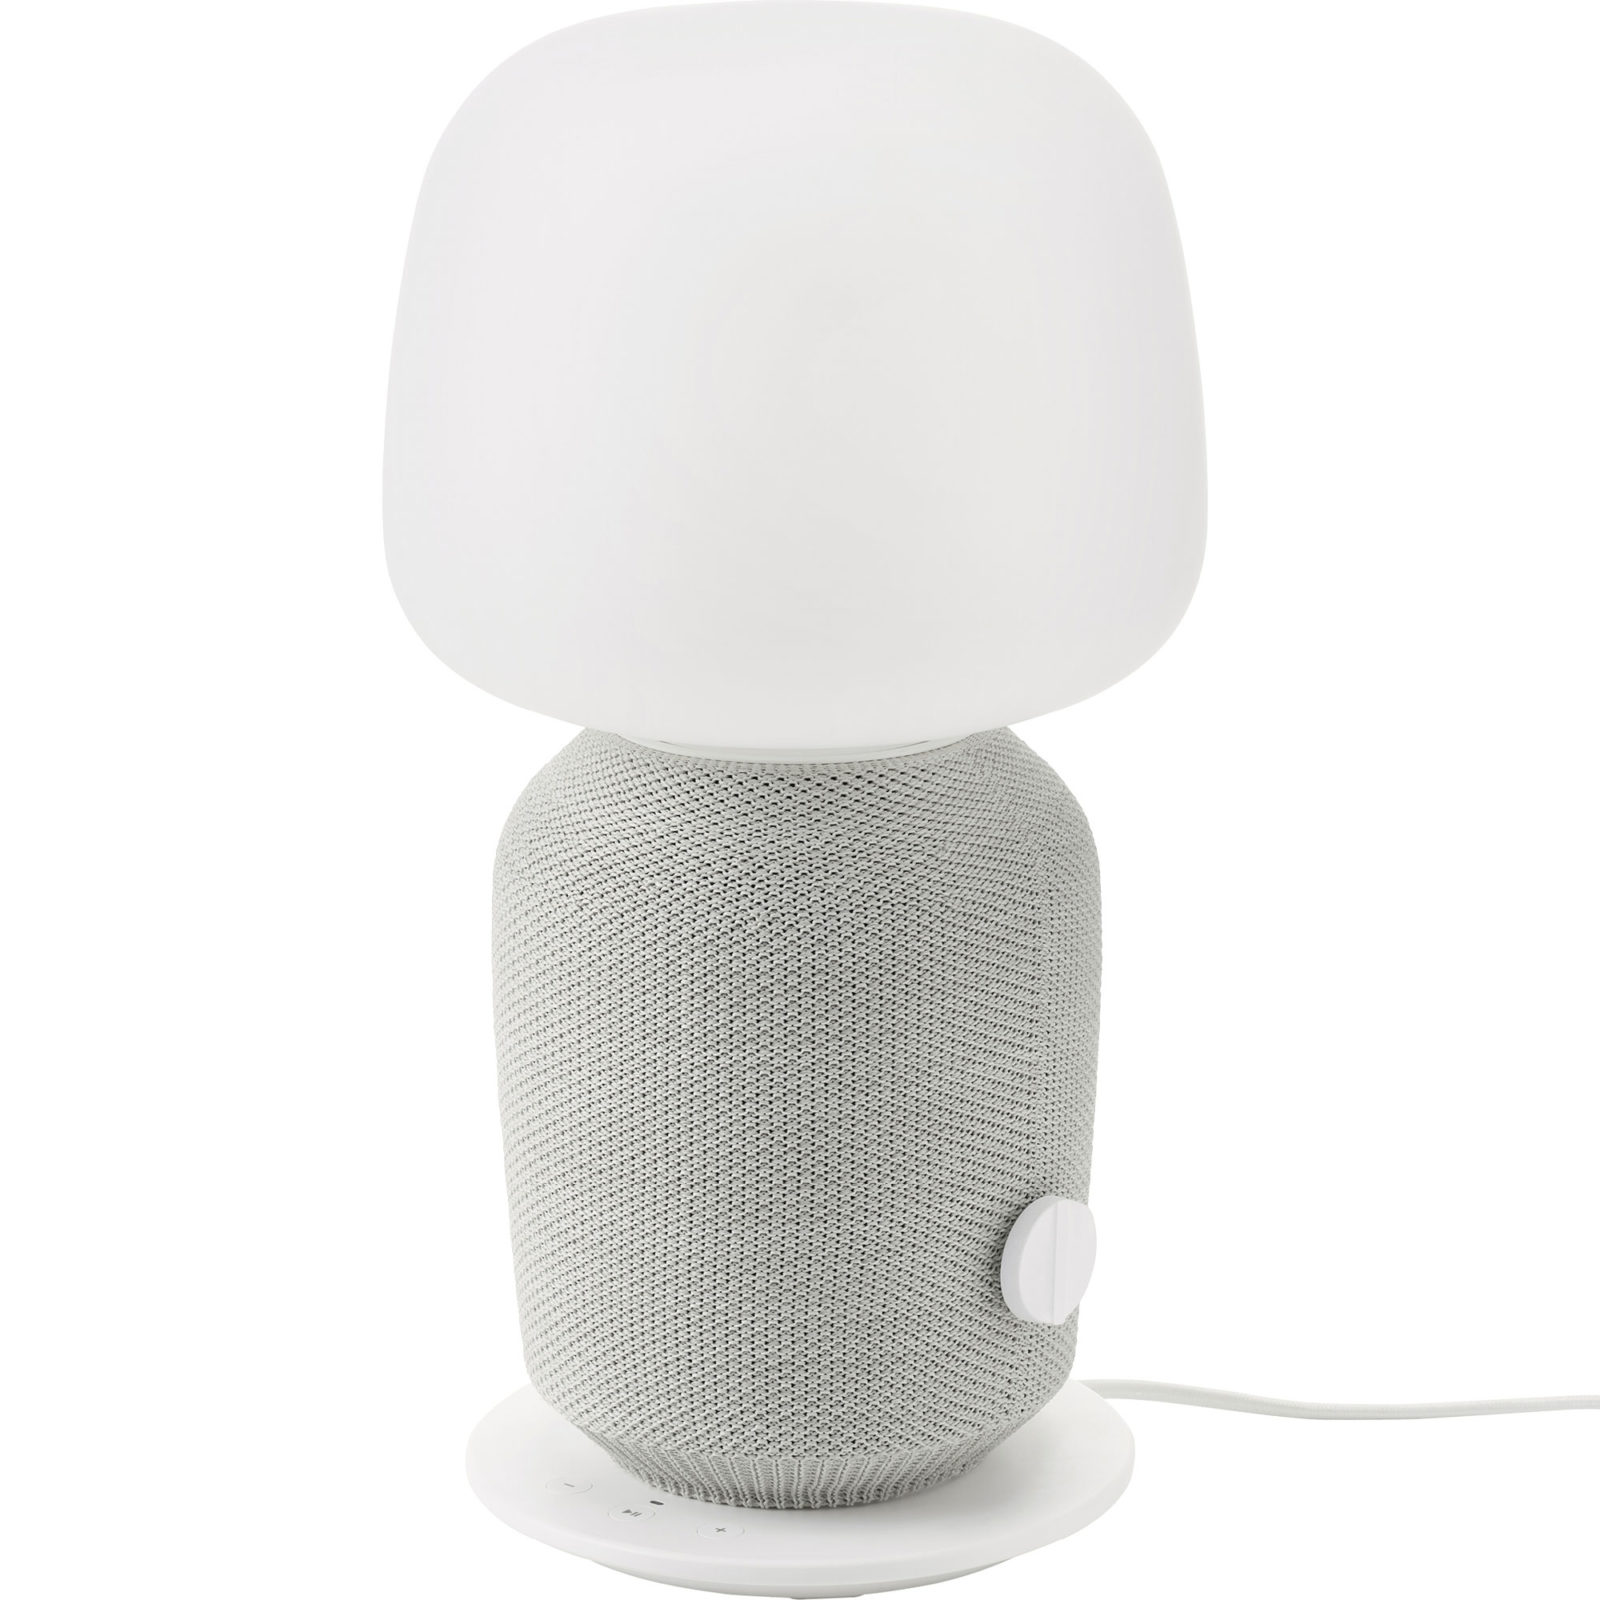 Bordslampa med WiFi-högtalare i lampfoten klädd med grå mesh, SYMFONISK.